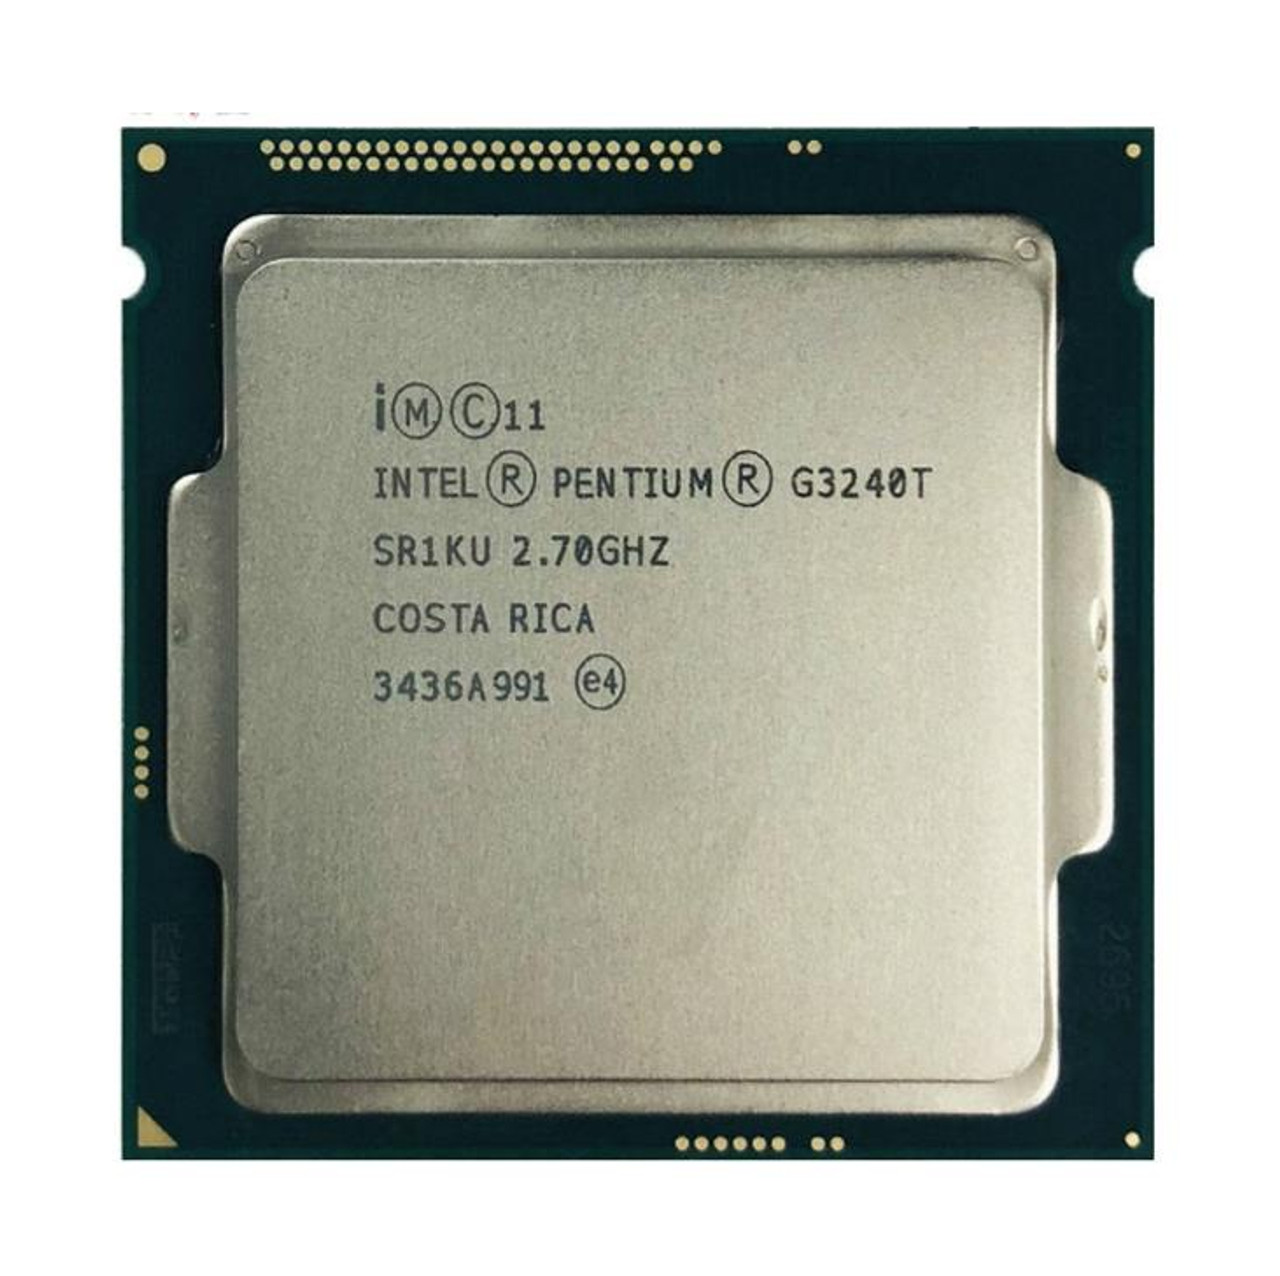 Lenovo 2.70GHz 5.00GT/s DMI2 3MB L3 Cache Socket LGA1150 Intel Pentium G3240T Dual Core Desktop Processor Upgrade